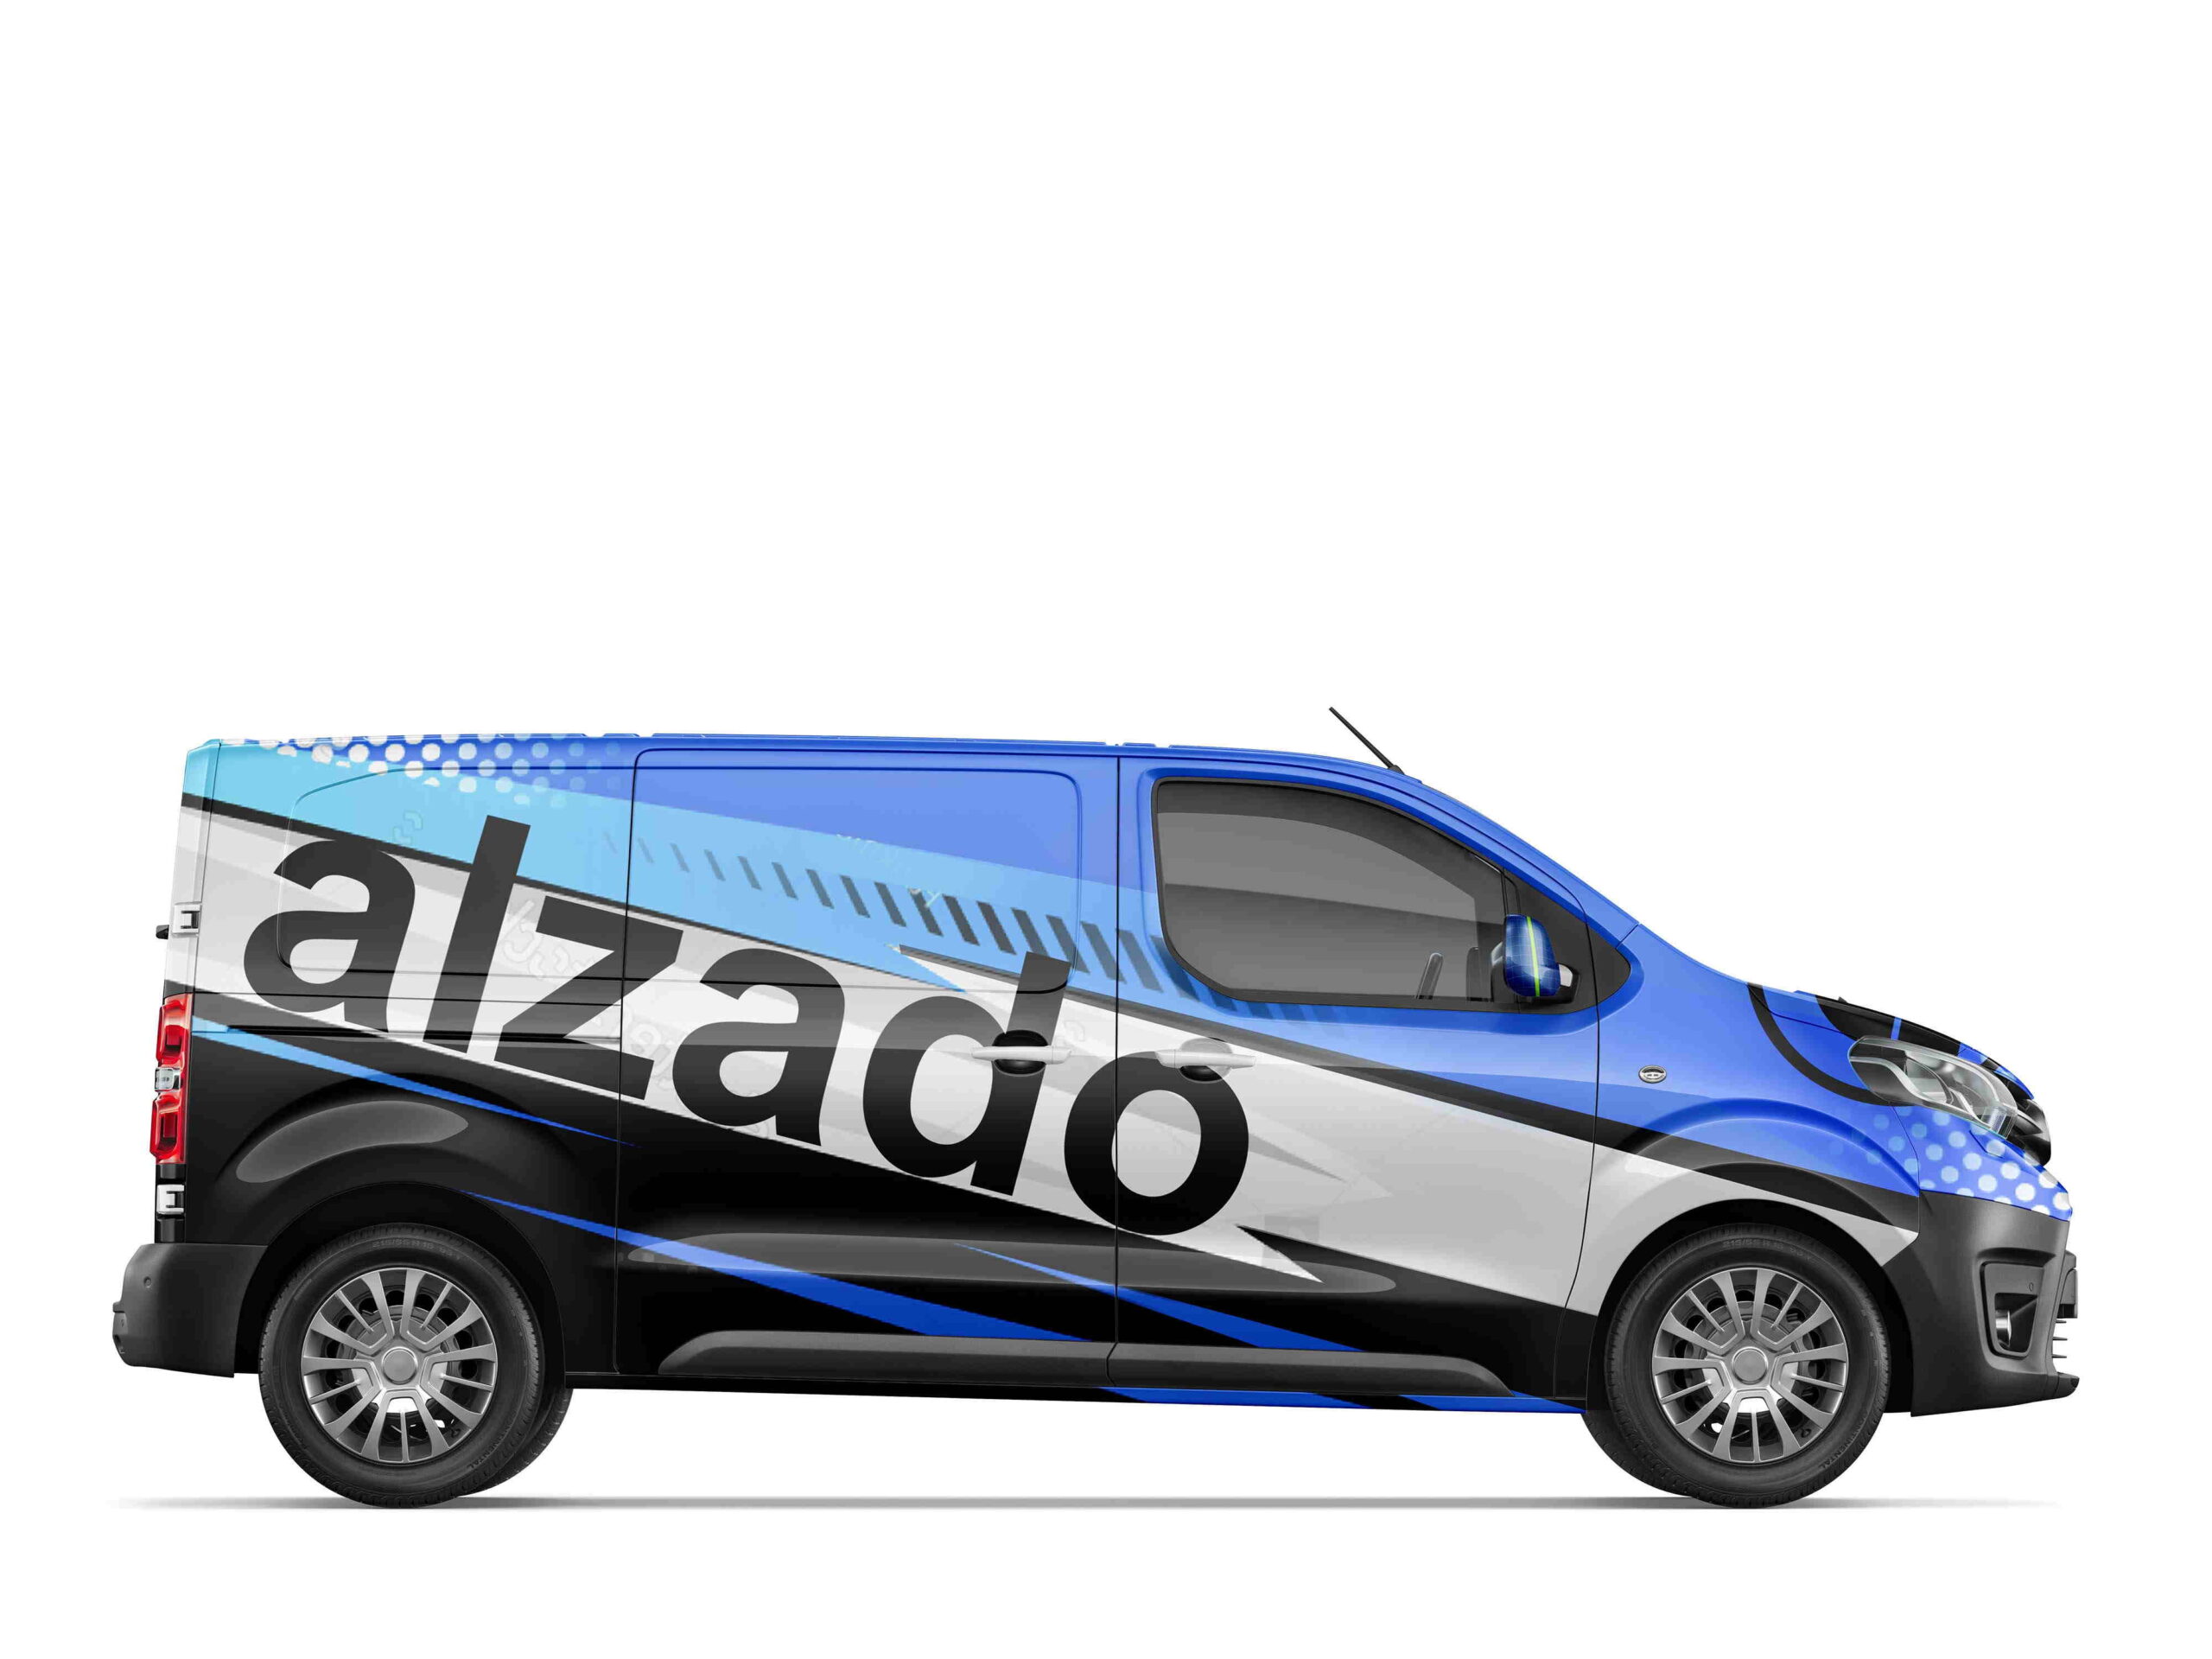 Alzado Rótulos Zamora ofrece Rotulación de vehículos y Lunas tintadas. Publicidad en coches y furgonetas. Rotular camiones